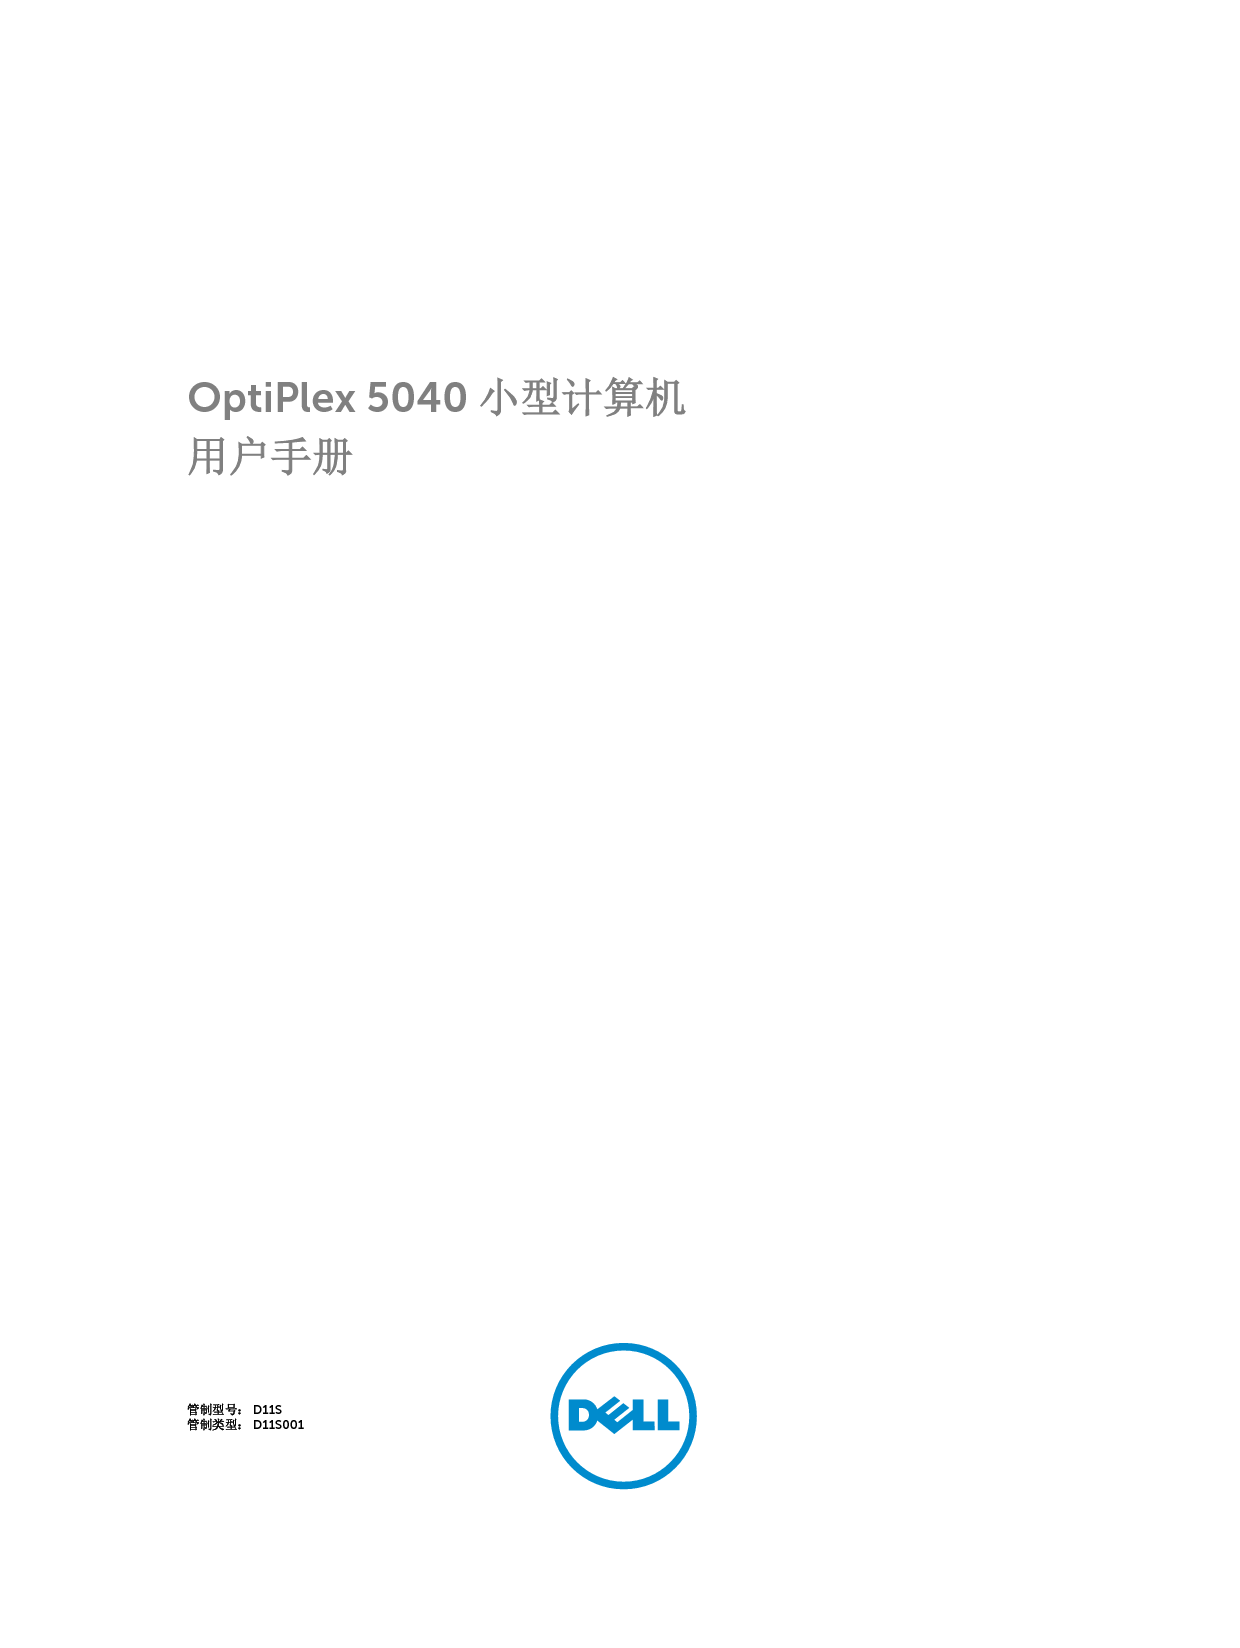 戴尔 Dell Optiplex 5040 小型 用户手册 封面